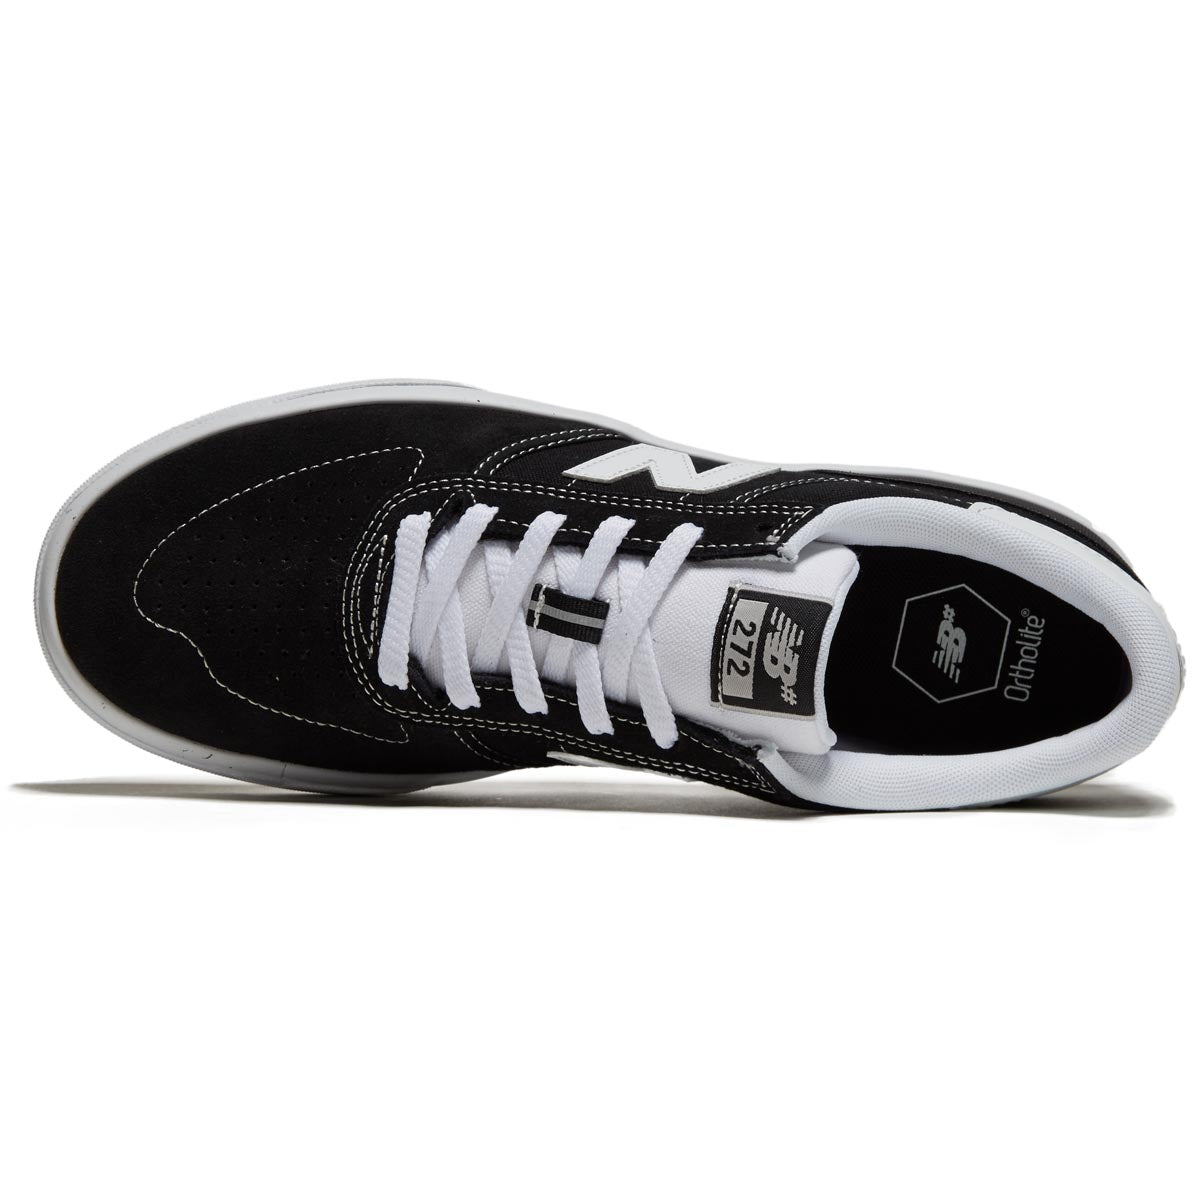 New Balance 272 Shoes - Black image 3